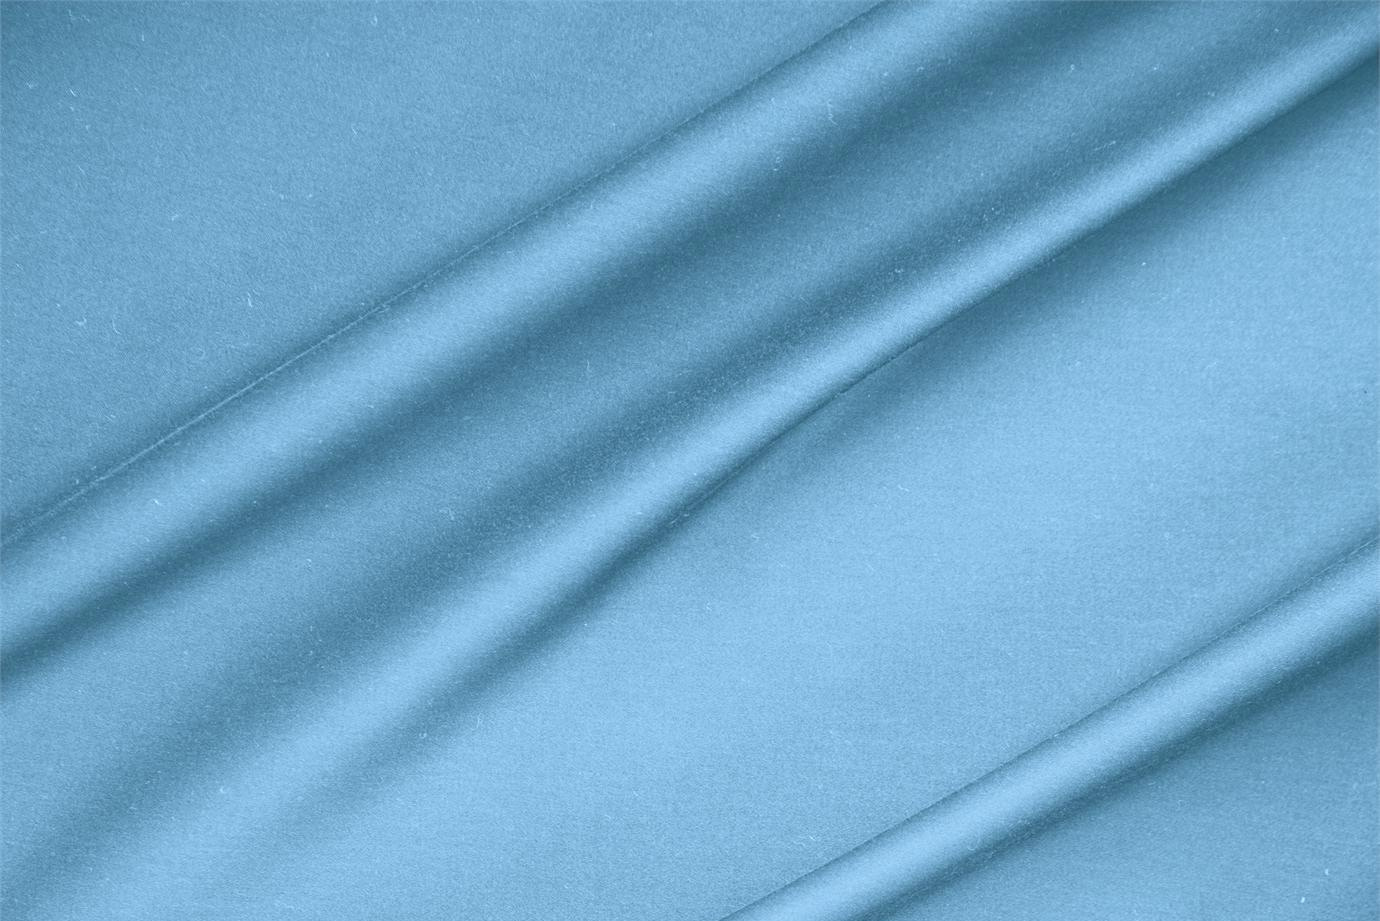 Tessuto Rasatello di Cotone Stretch Blu Turchese in Cotone, Stretch per Abbigliamento TC000253